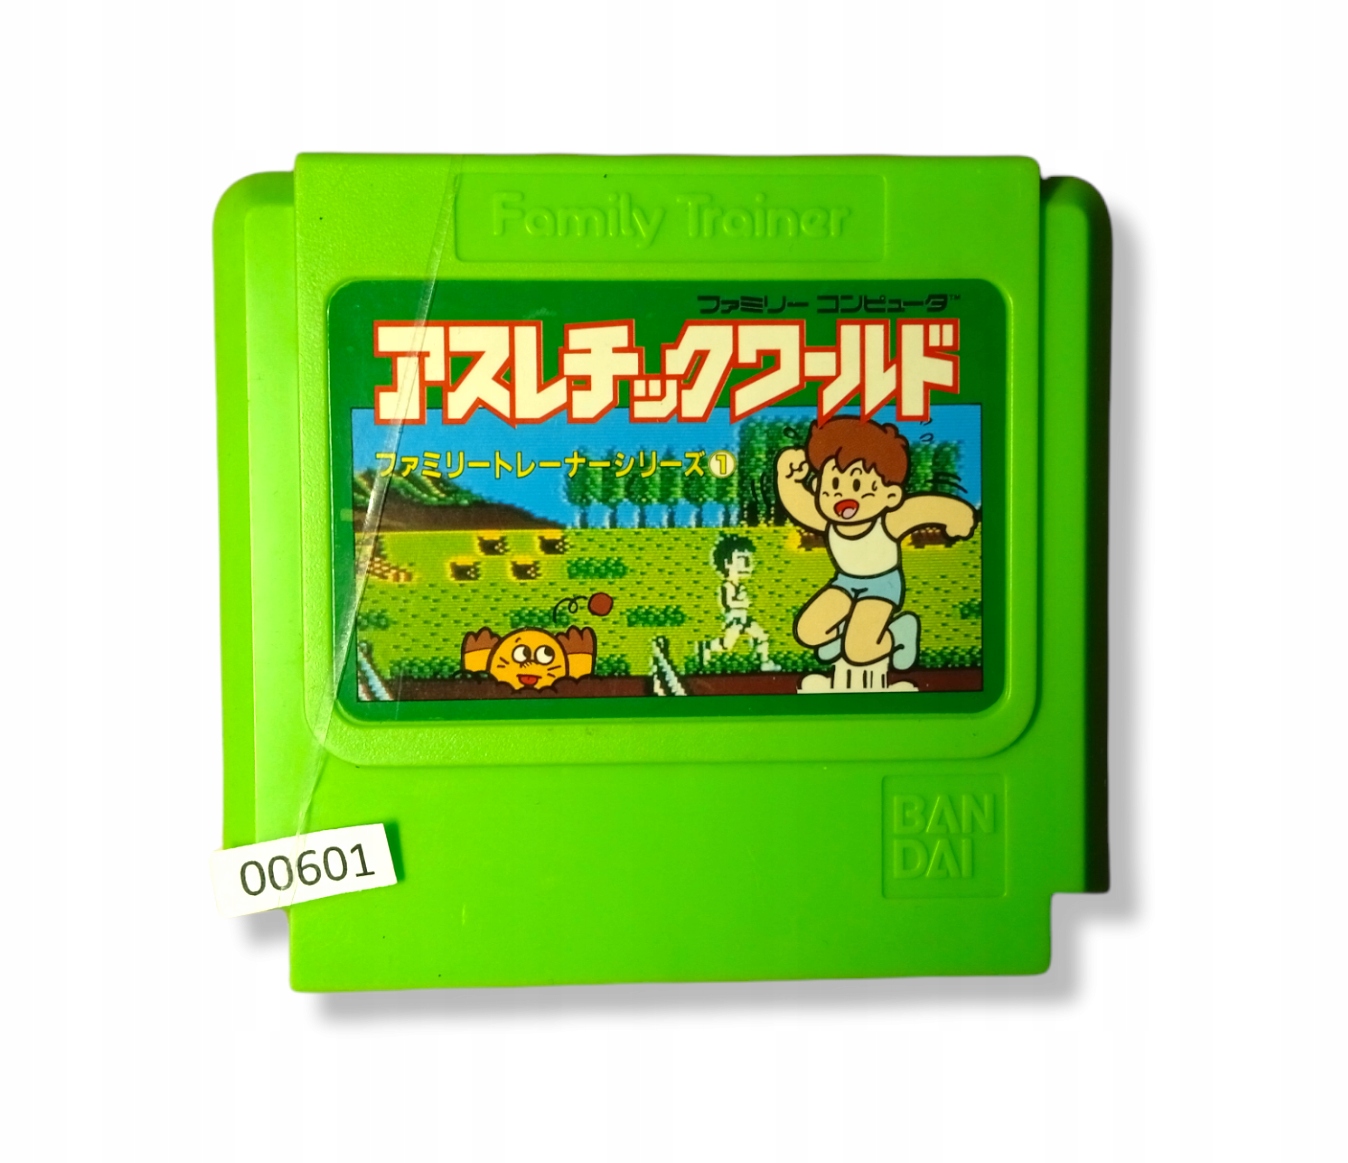 Спортивный мир - Famicom/Pegasus